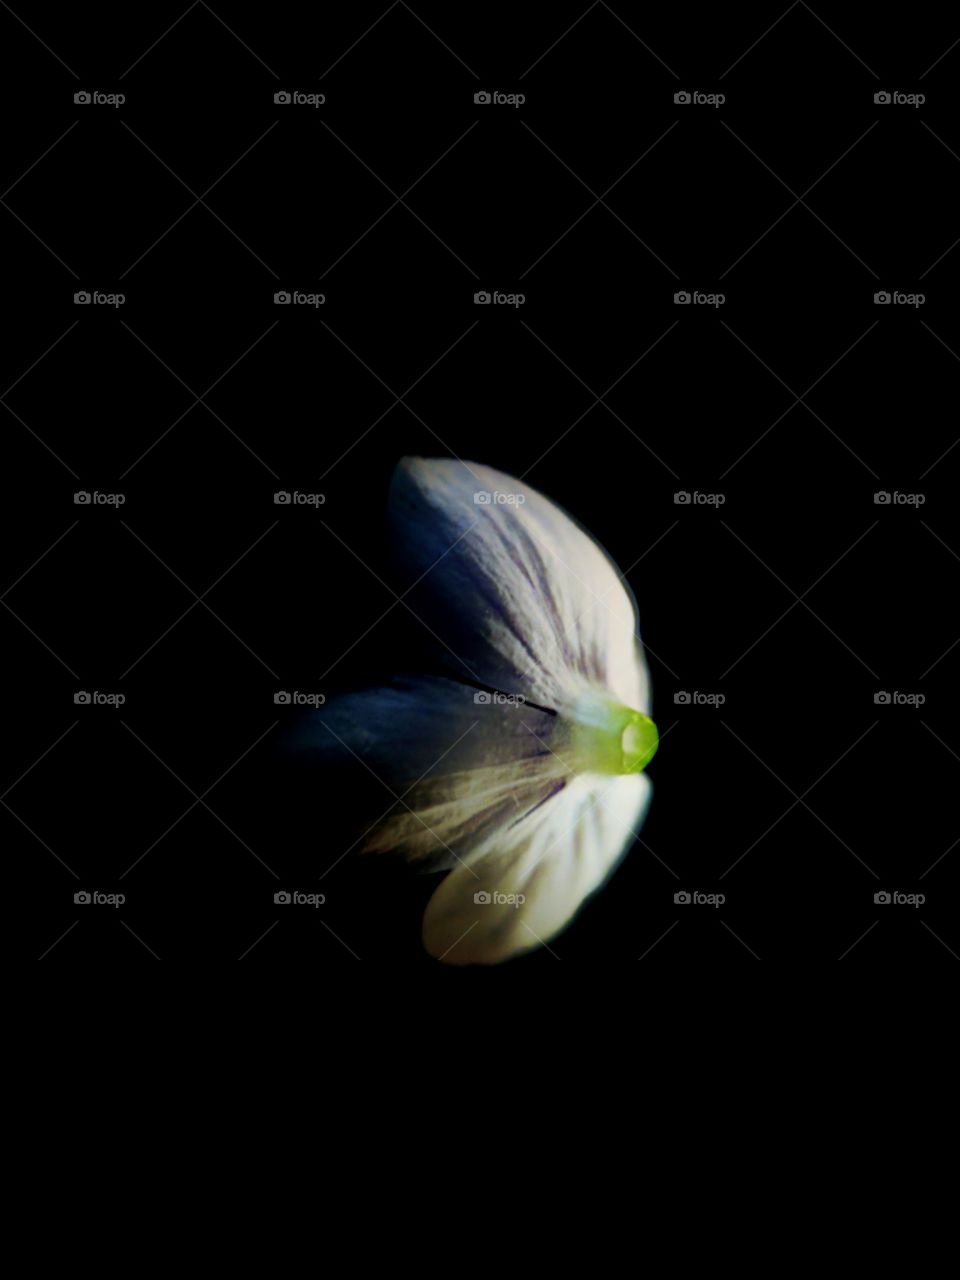 slightly lit flower petal on black background